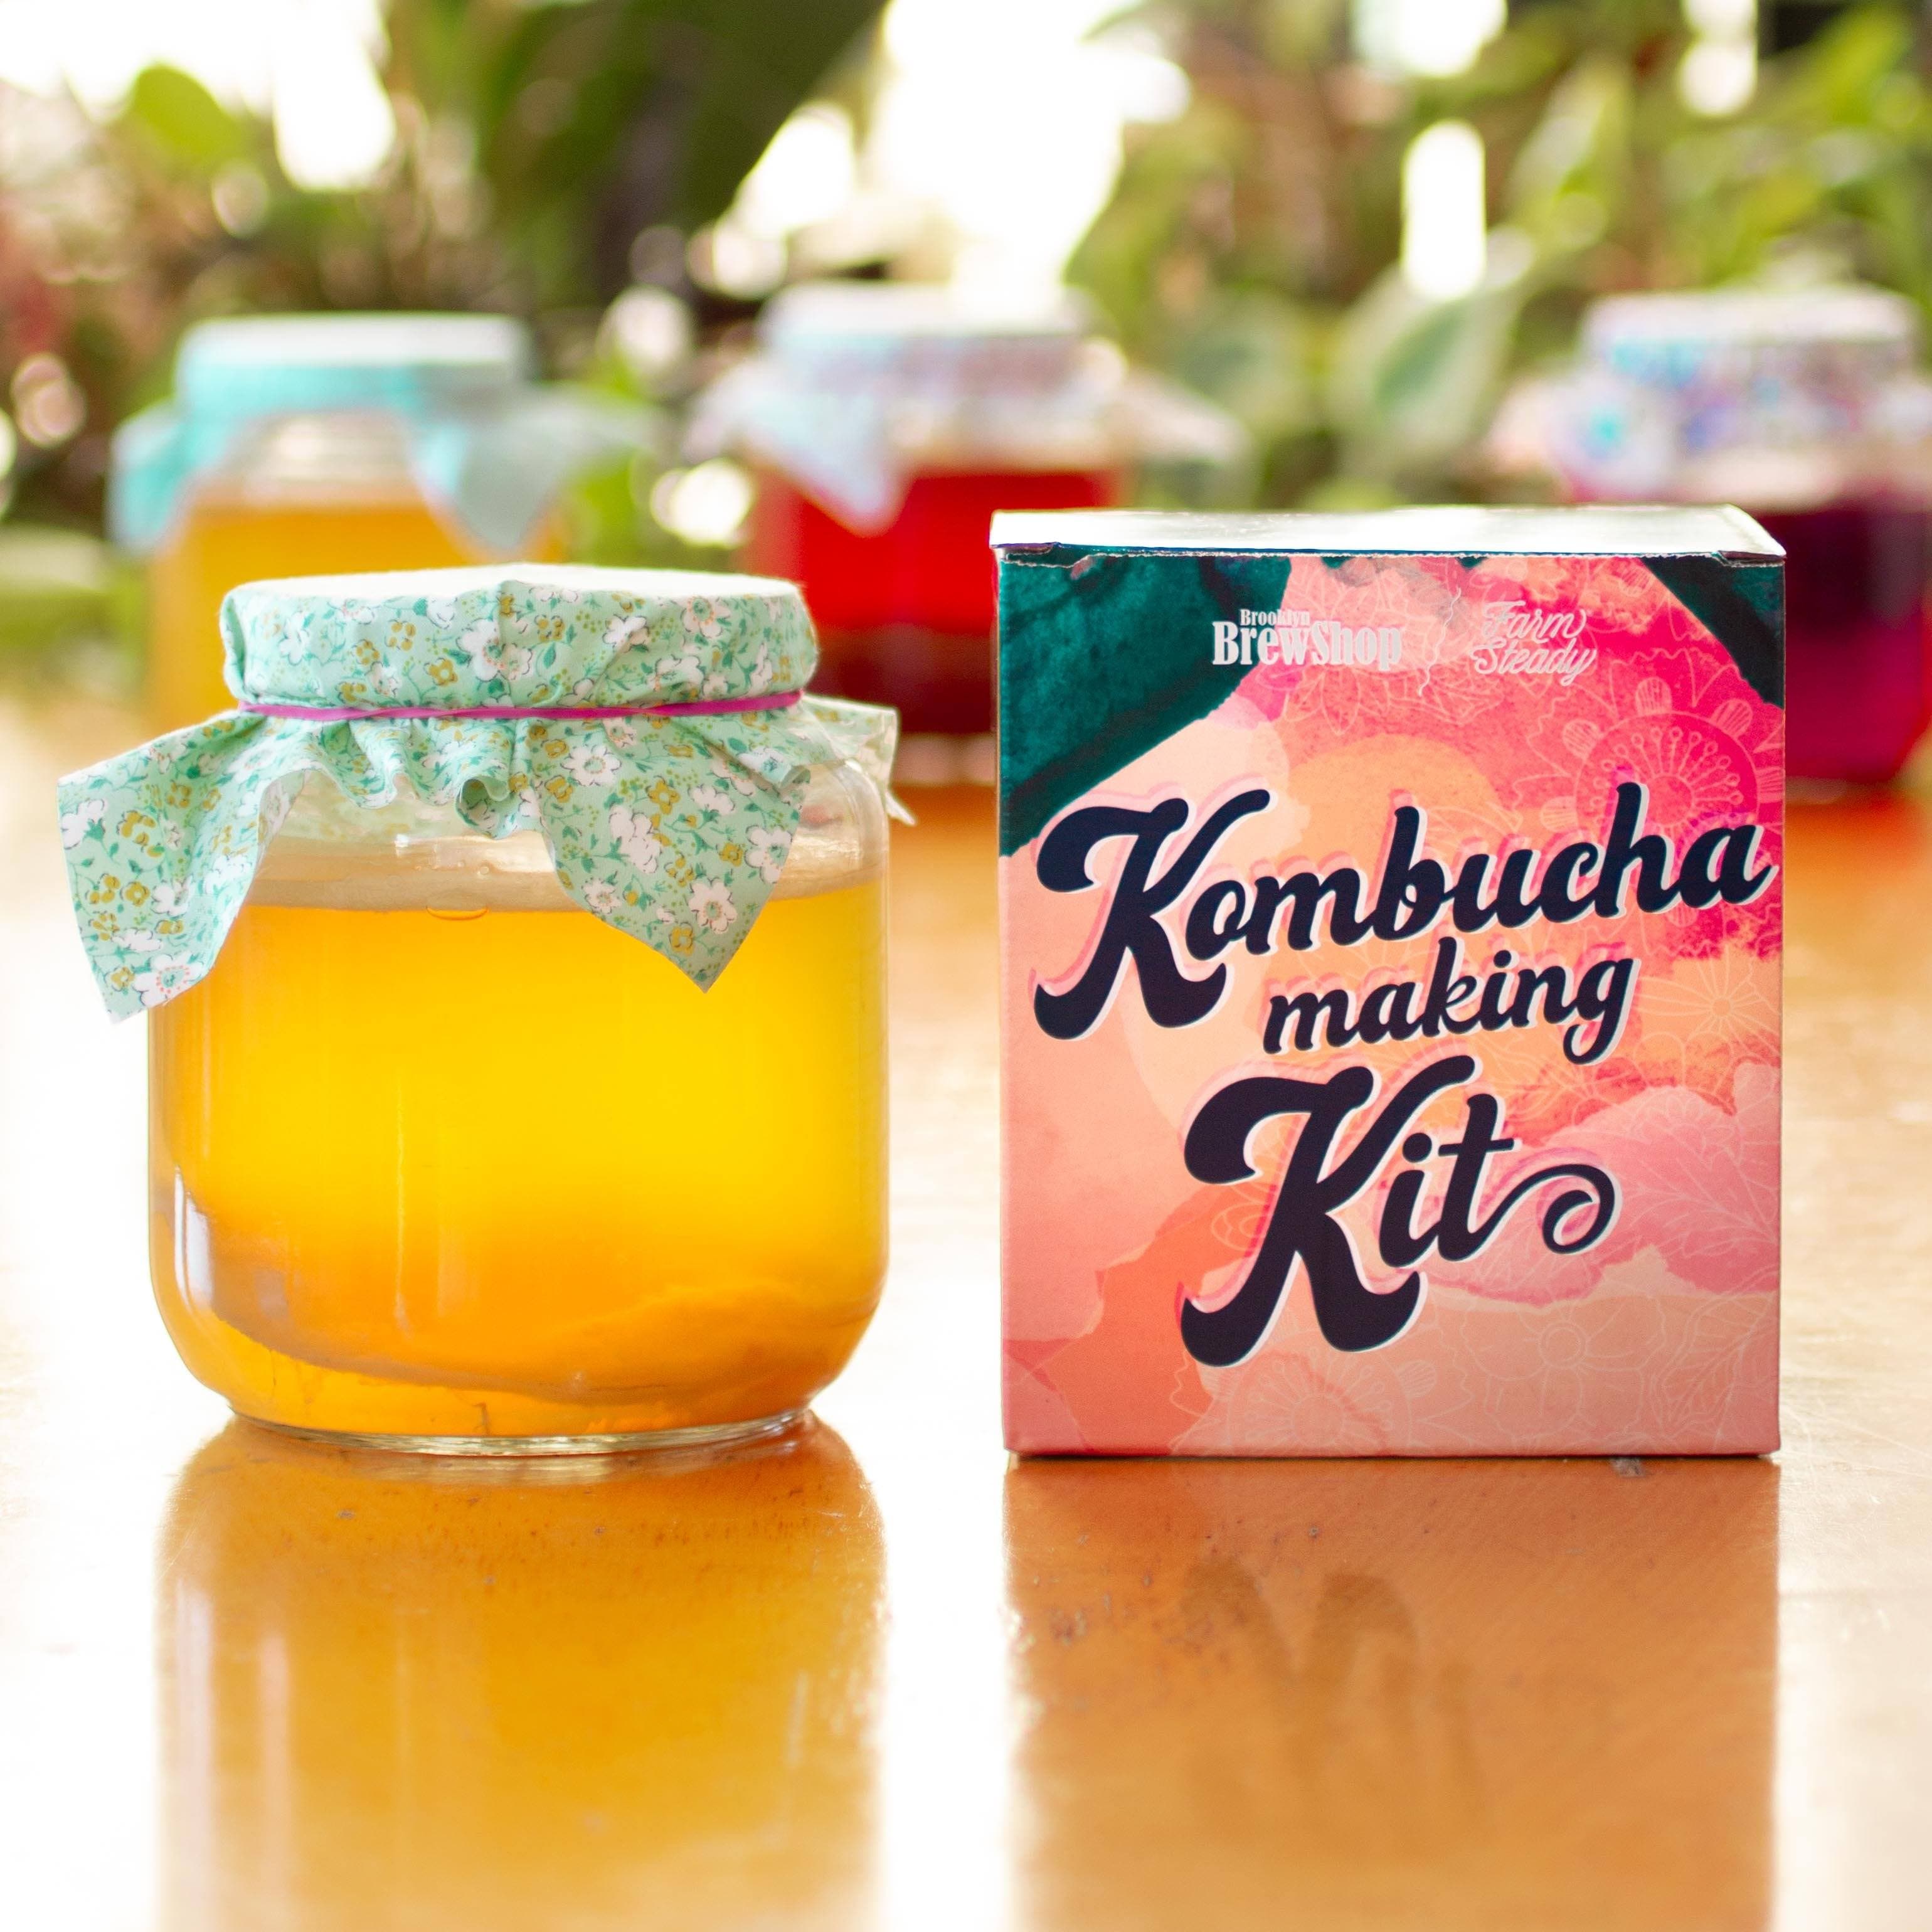 Kombucha Making Kit (1 gallon) - Fermenters Club